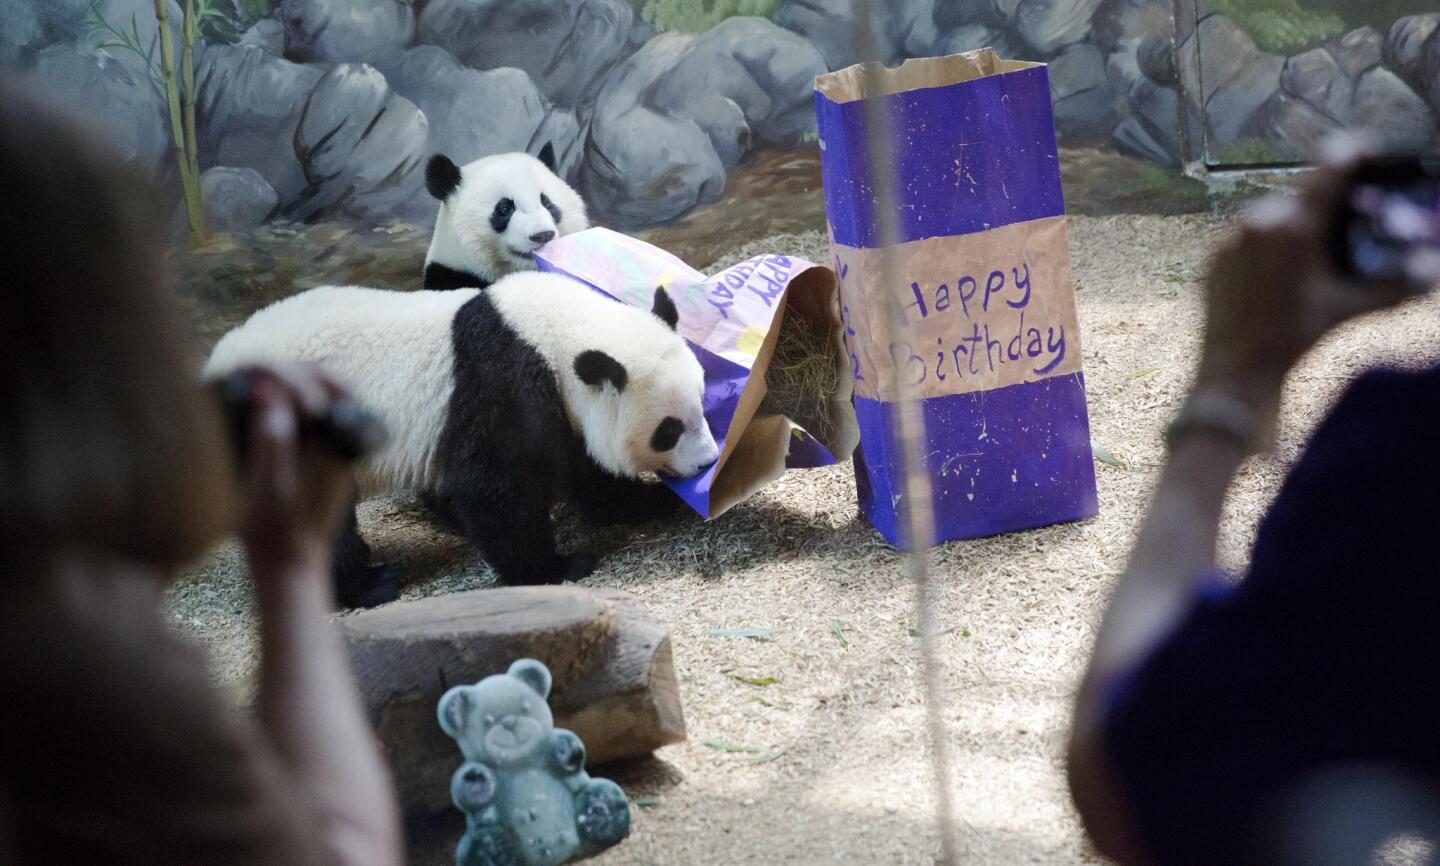 Pandas at U.S. zoos